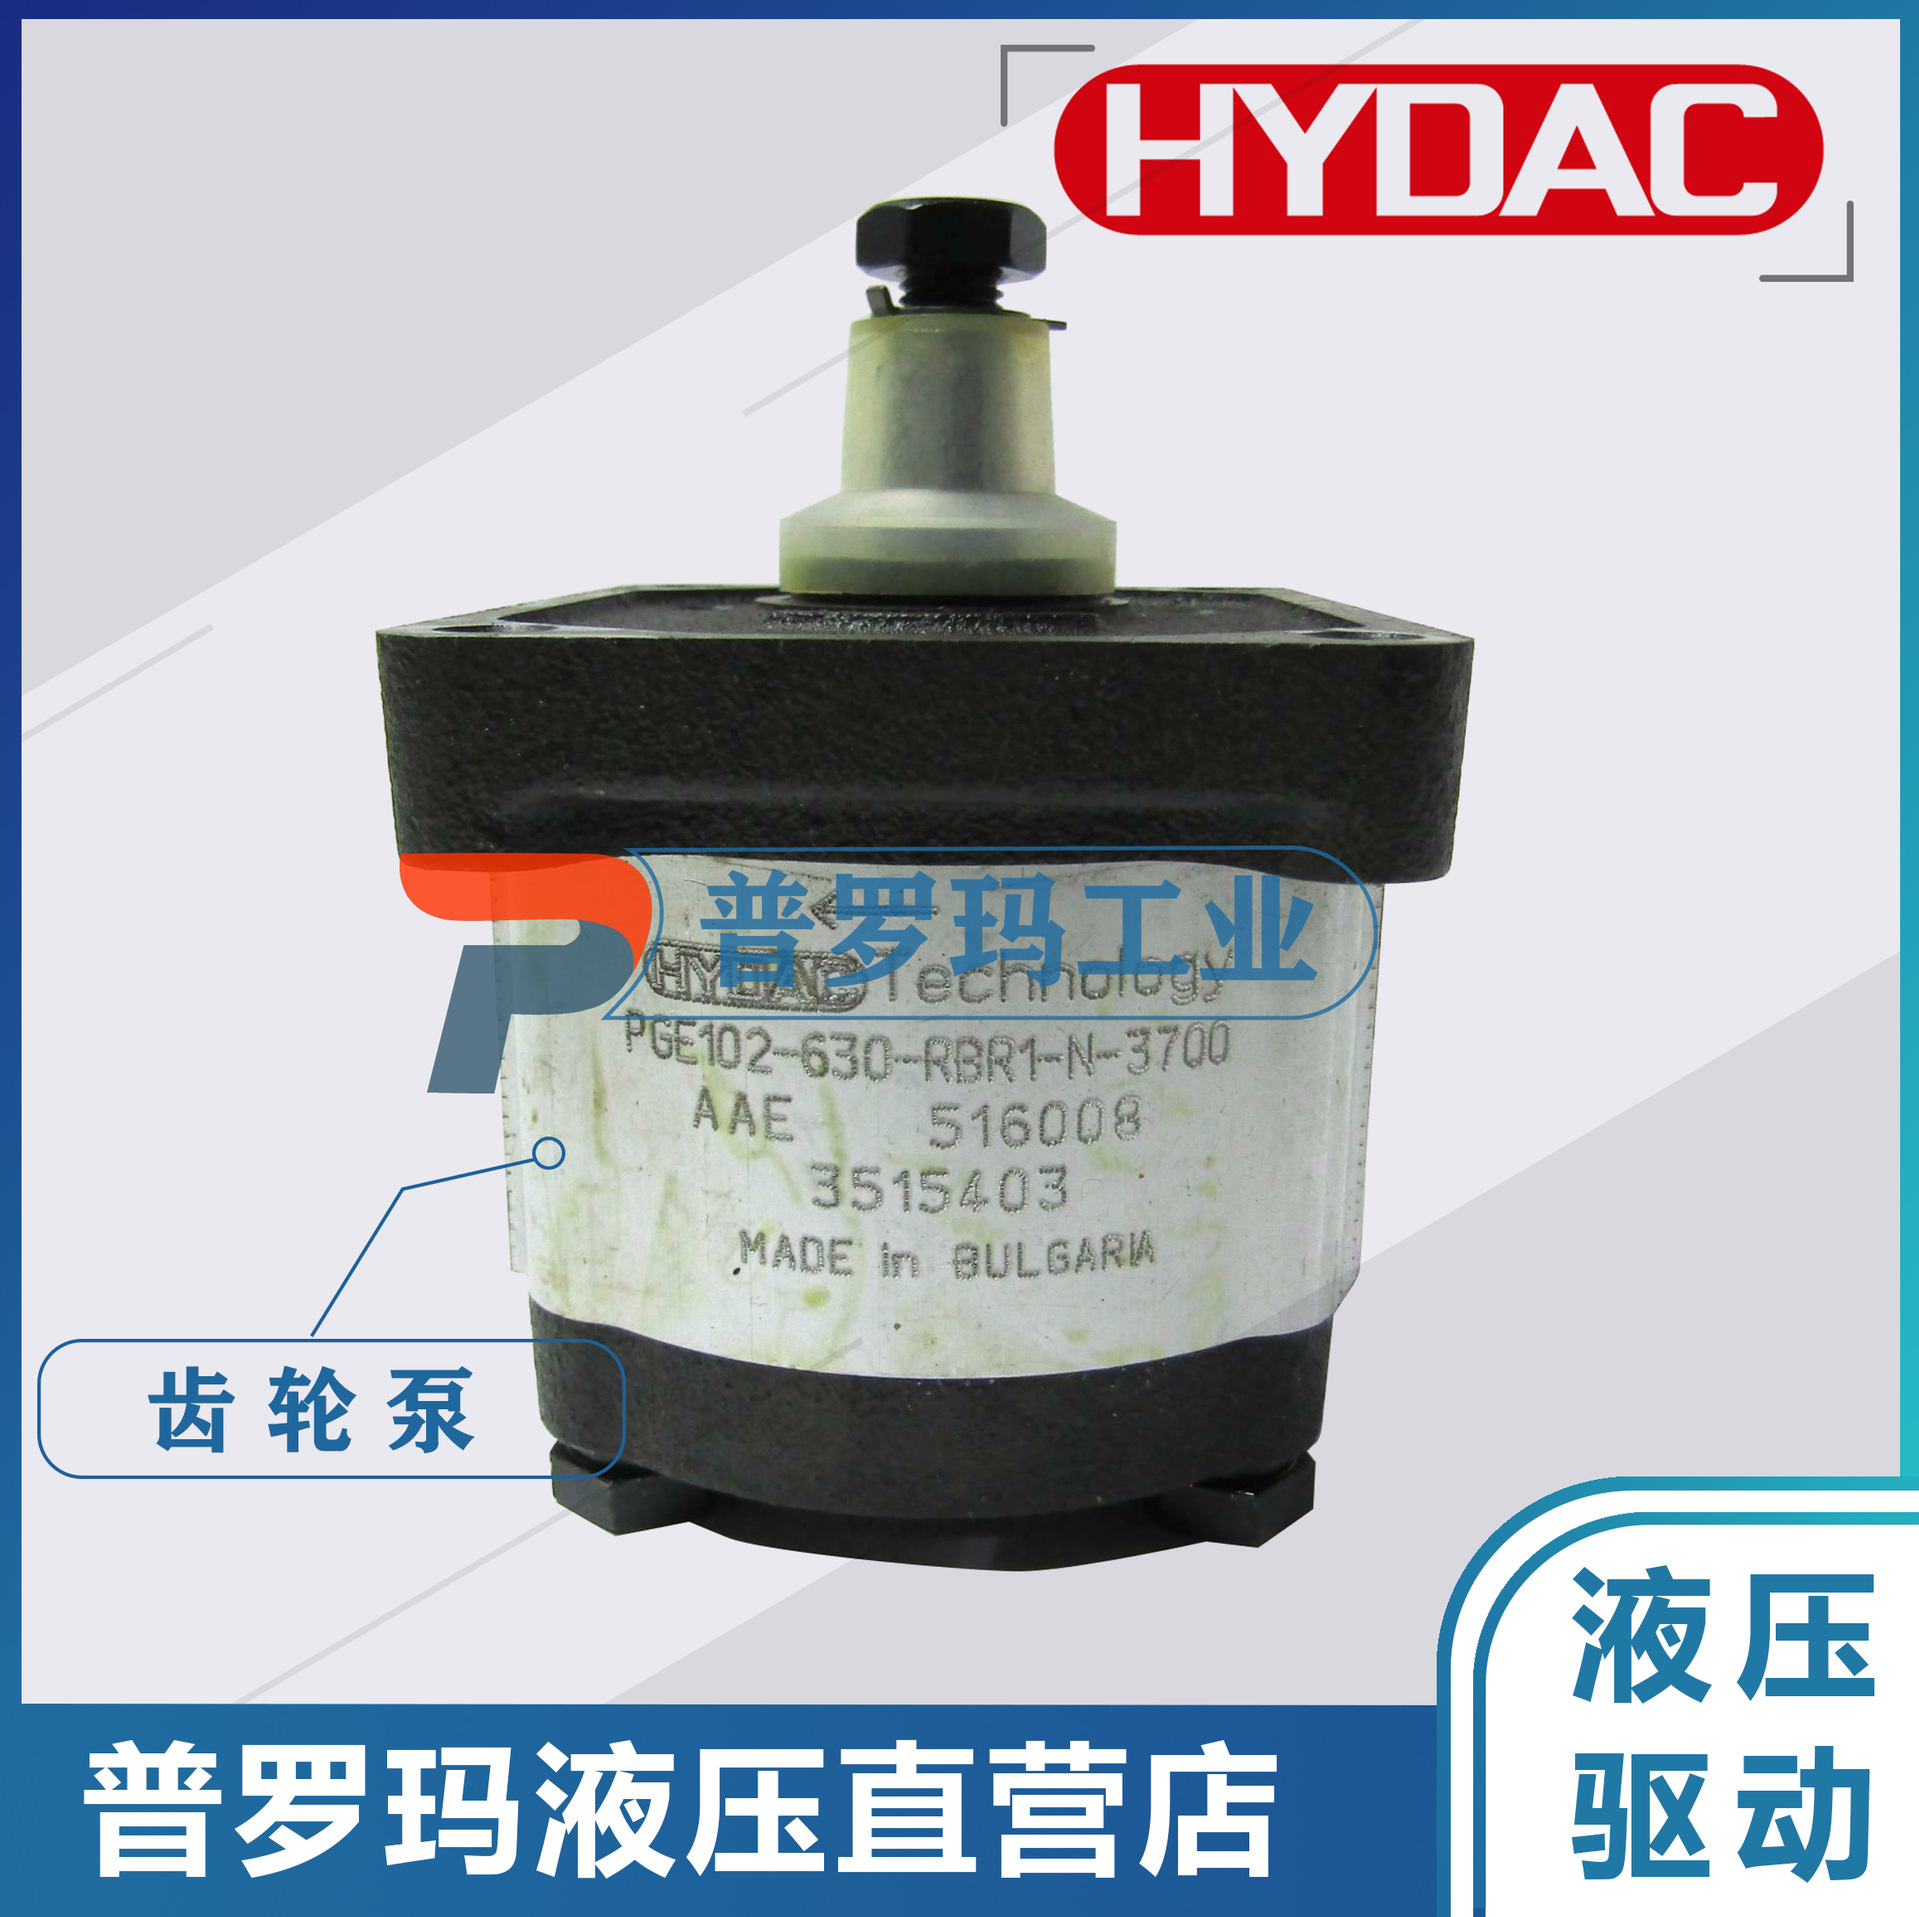 贺德克油泵HYDAC 3356162 758/OG 18325 2cc/rev 4.2cc系统齿轮泵